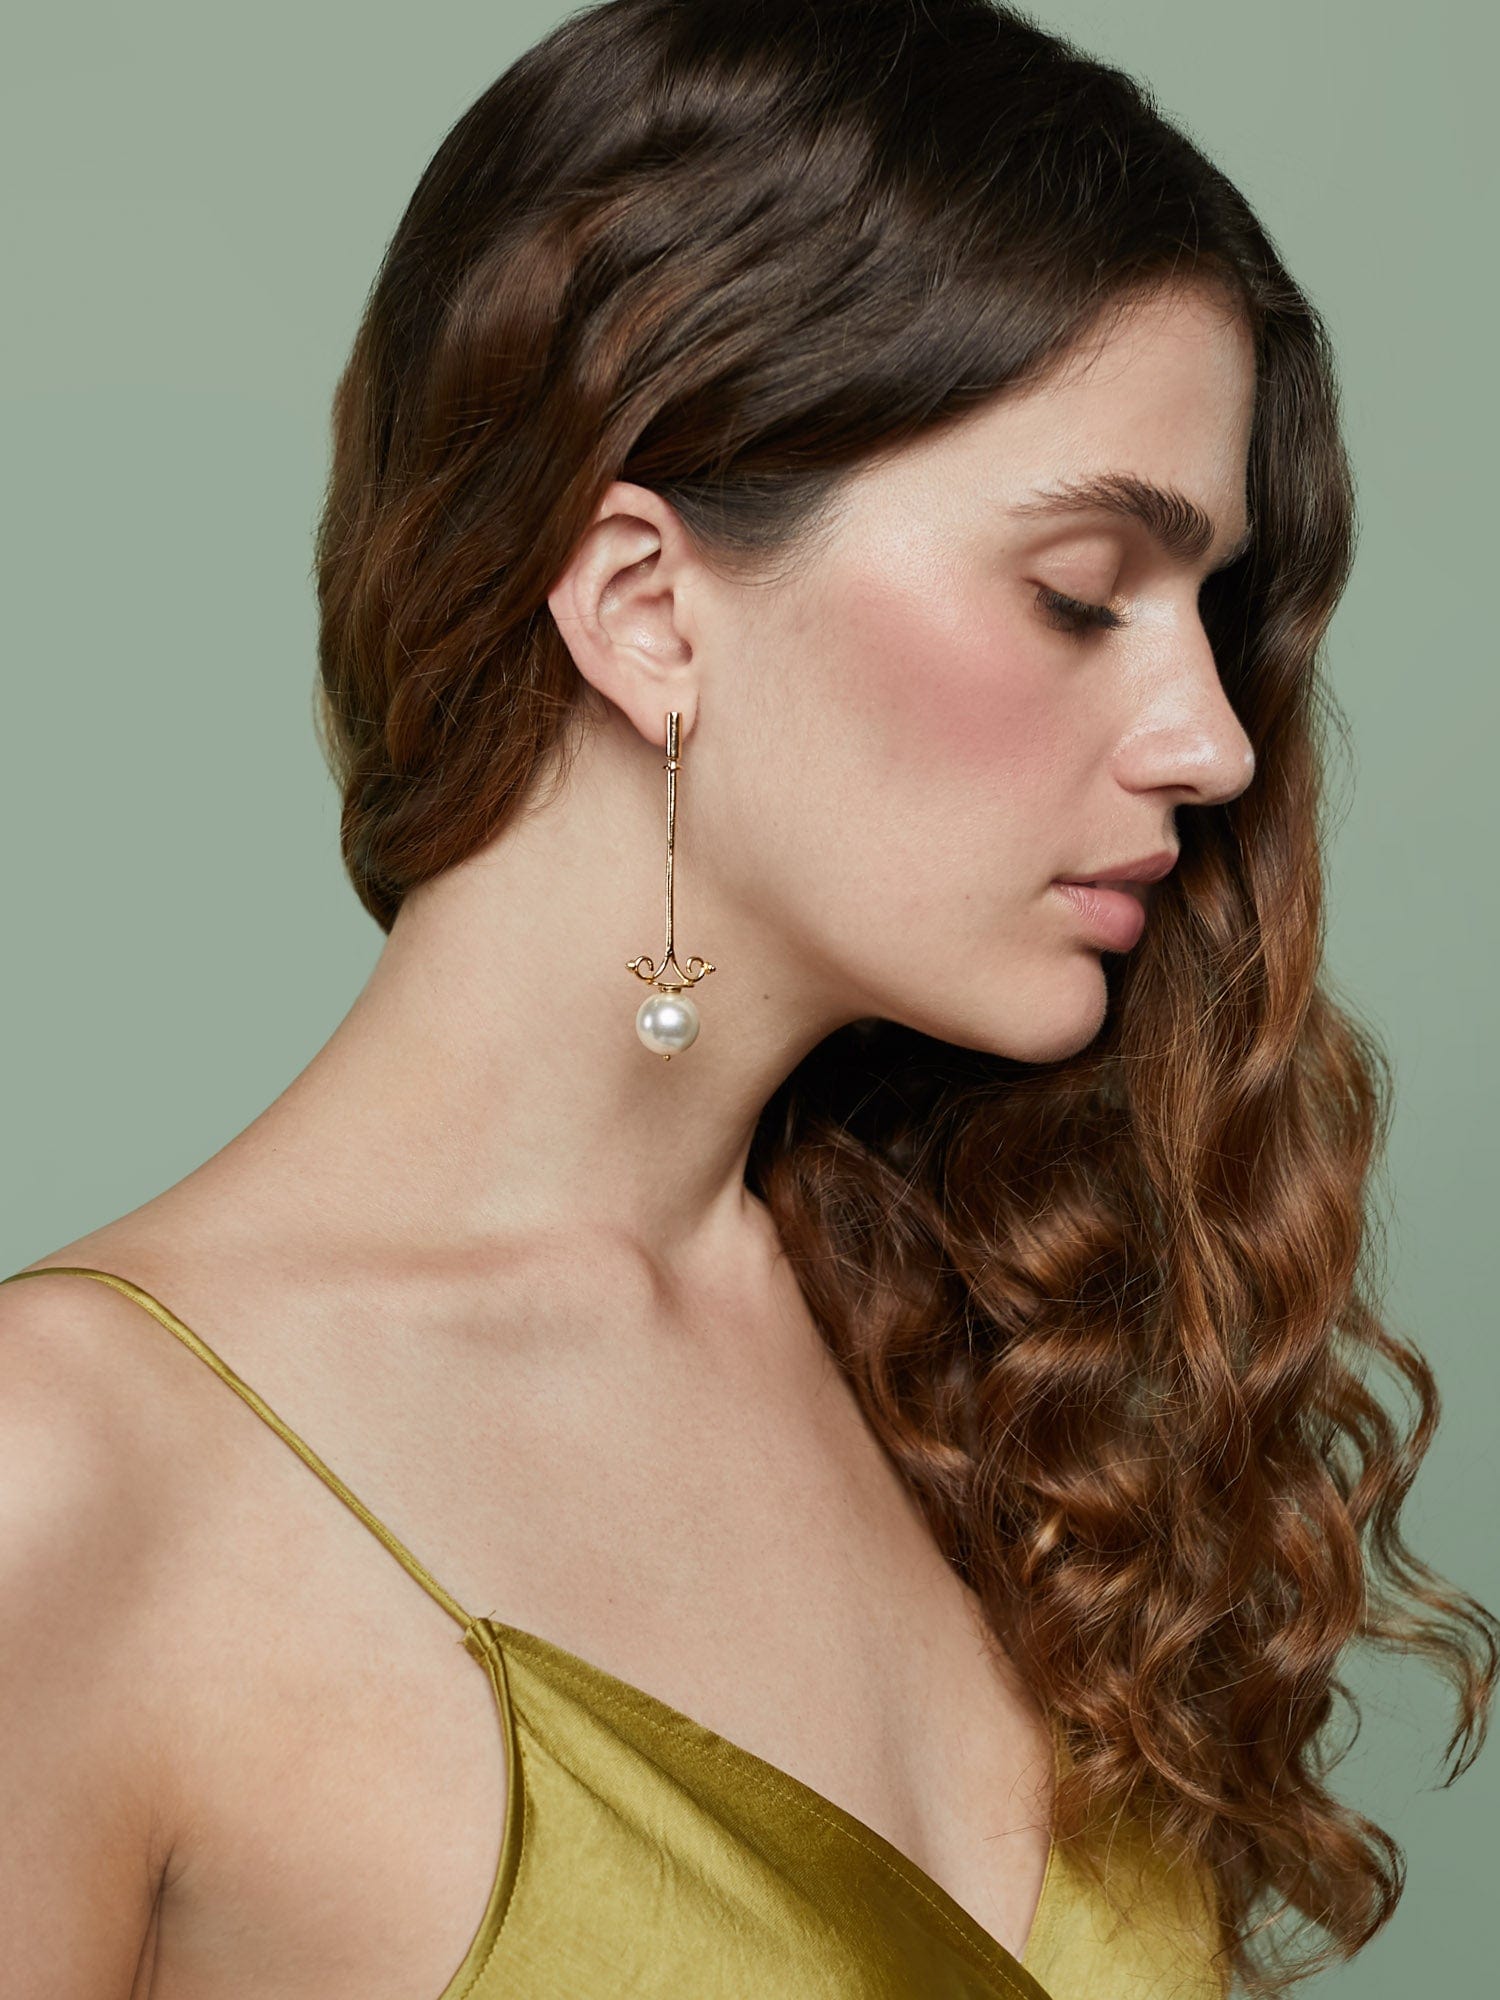 Lampadaire earrings